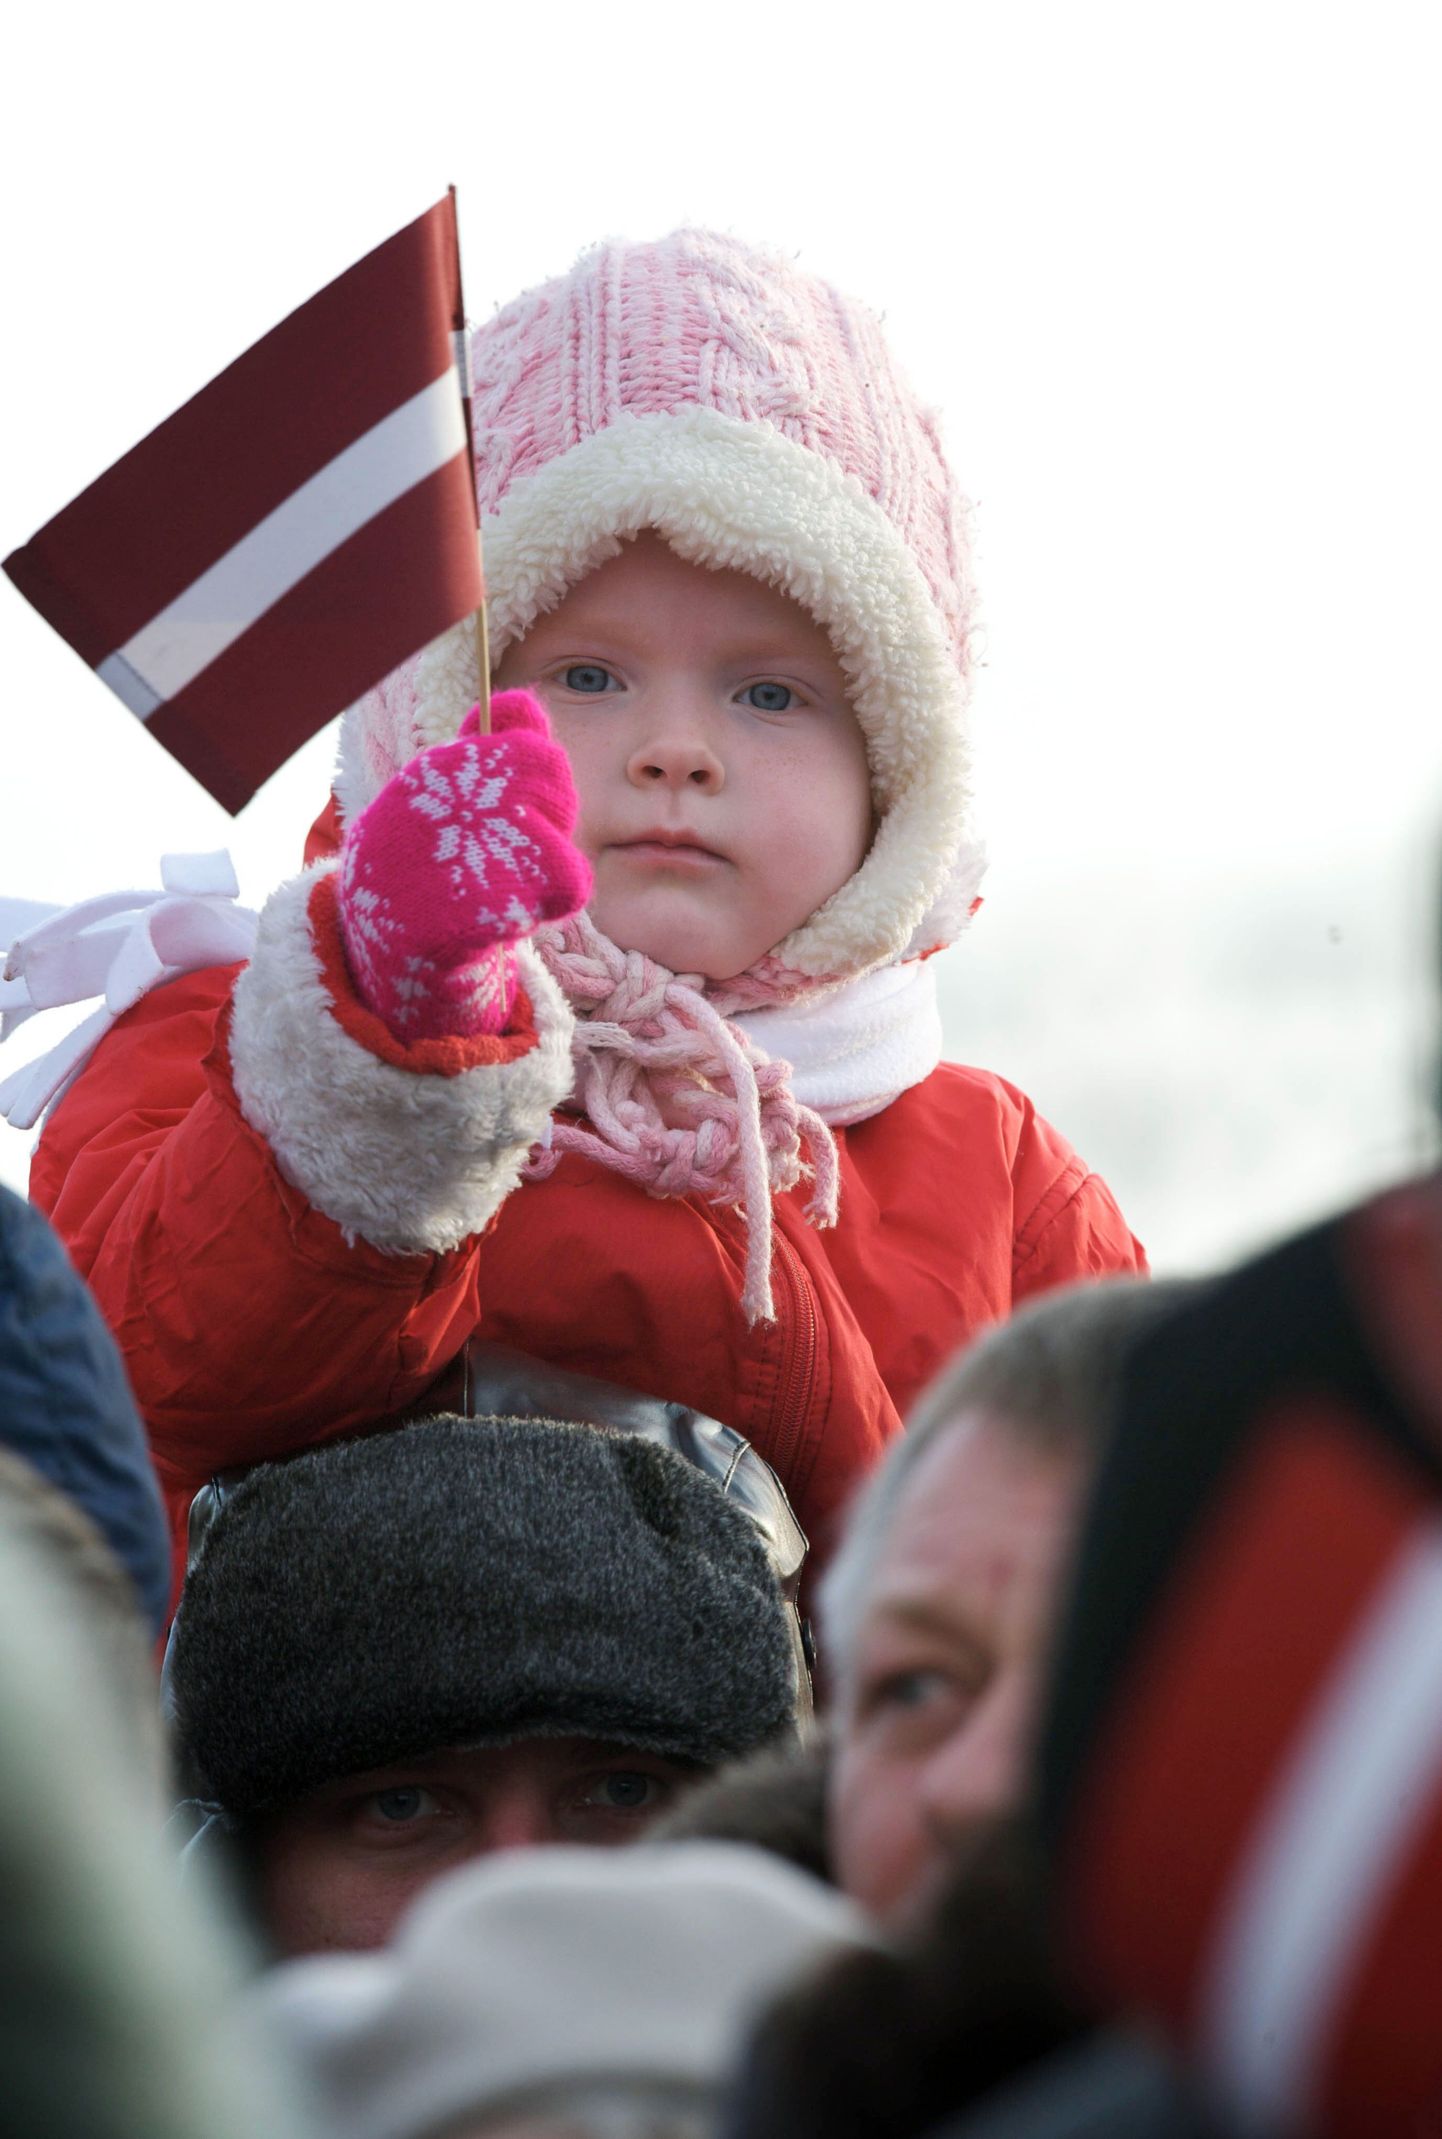 Läti laps möödunud kuul toimunud riigi 90. juubelil.